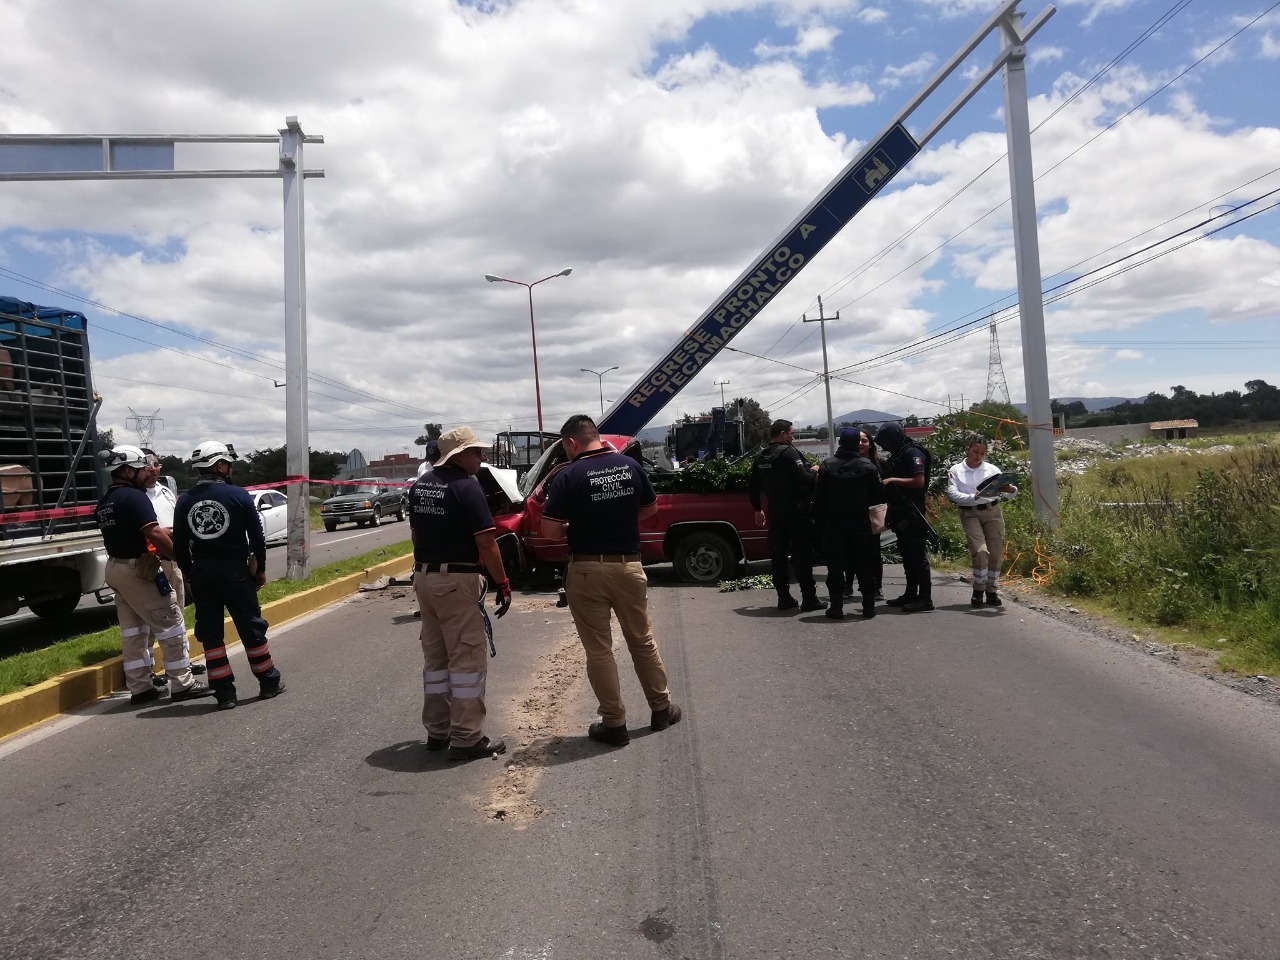 Automovilista, Tecamachalco, choque, Dodge Ram, Protección Civil Municipal, paramédicos, Cruz Roja, Veracruz, estructura metálica